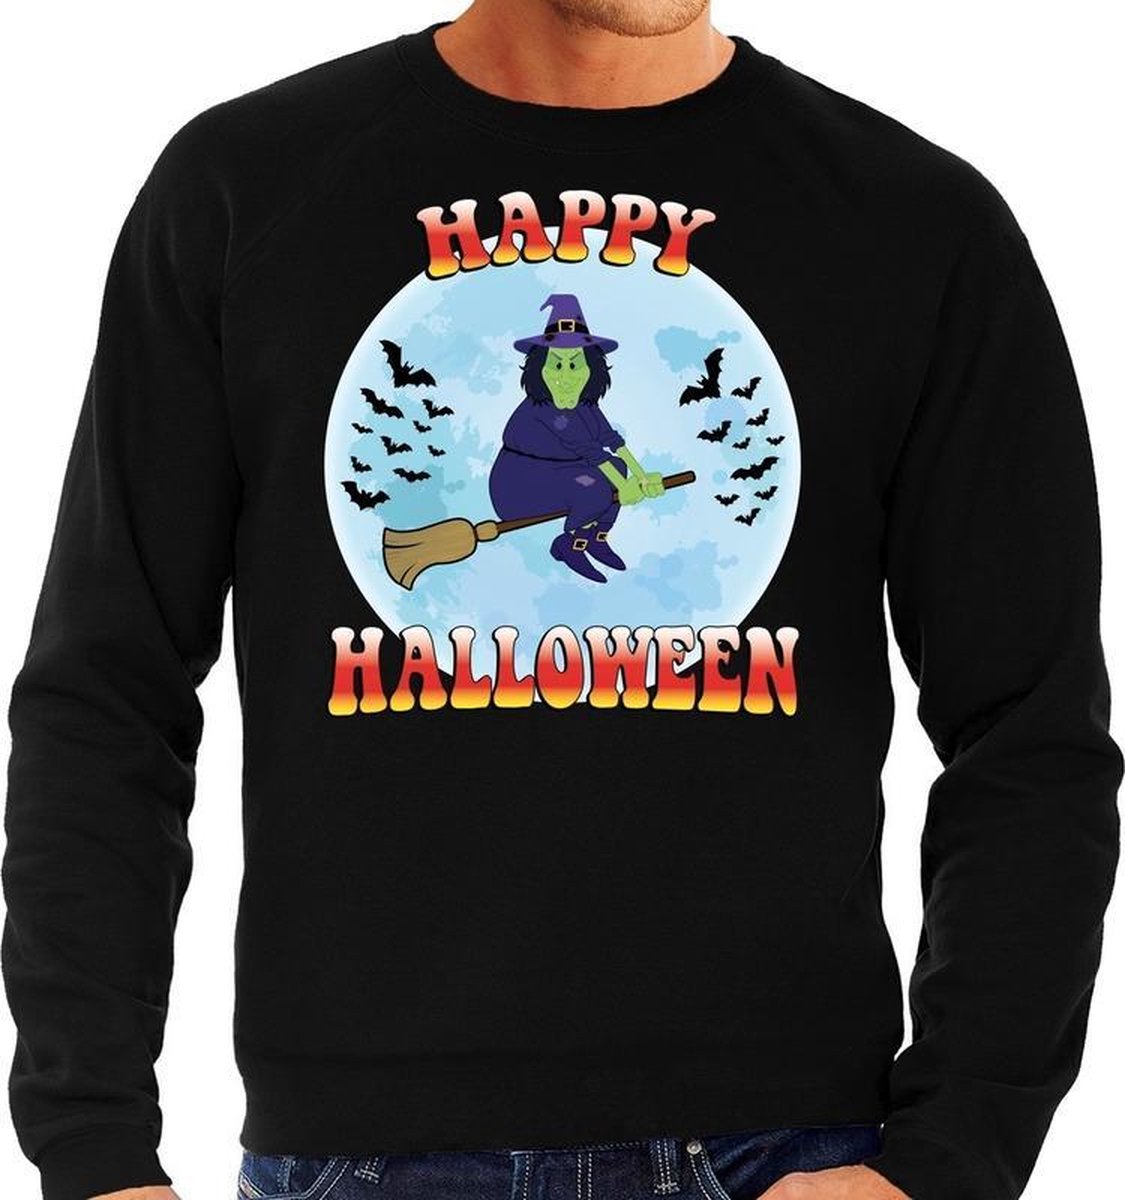 Halloween Happy Halloween heks verkleed sweater zwart voor heren - horror heks trui / kleding / kostuum XL